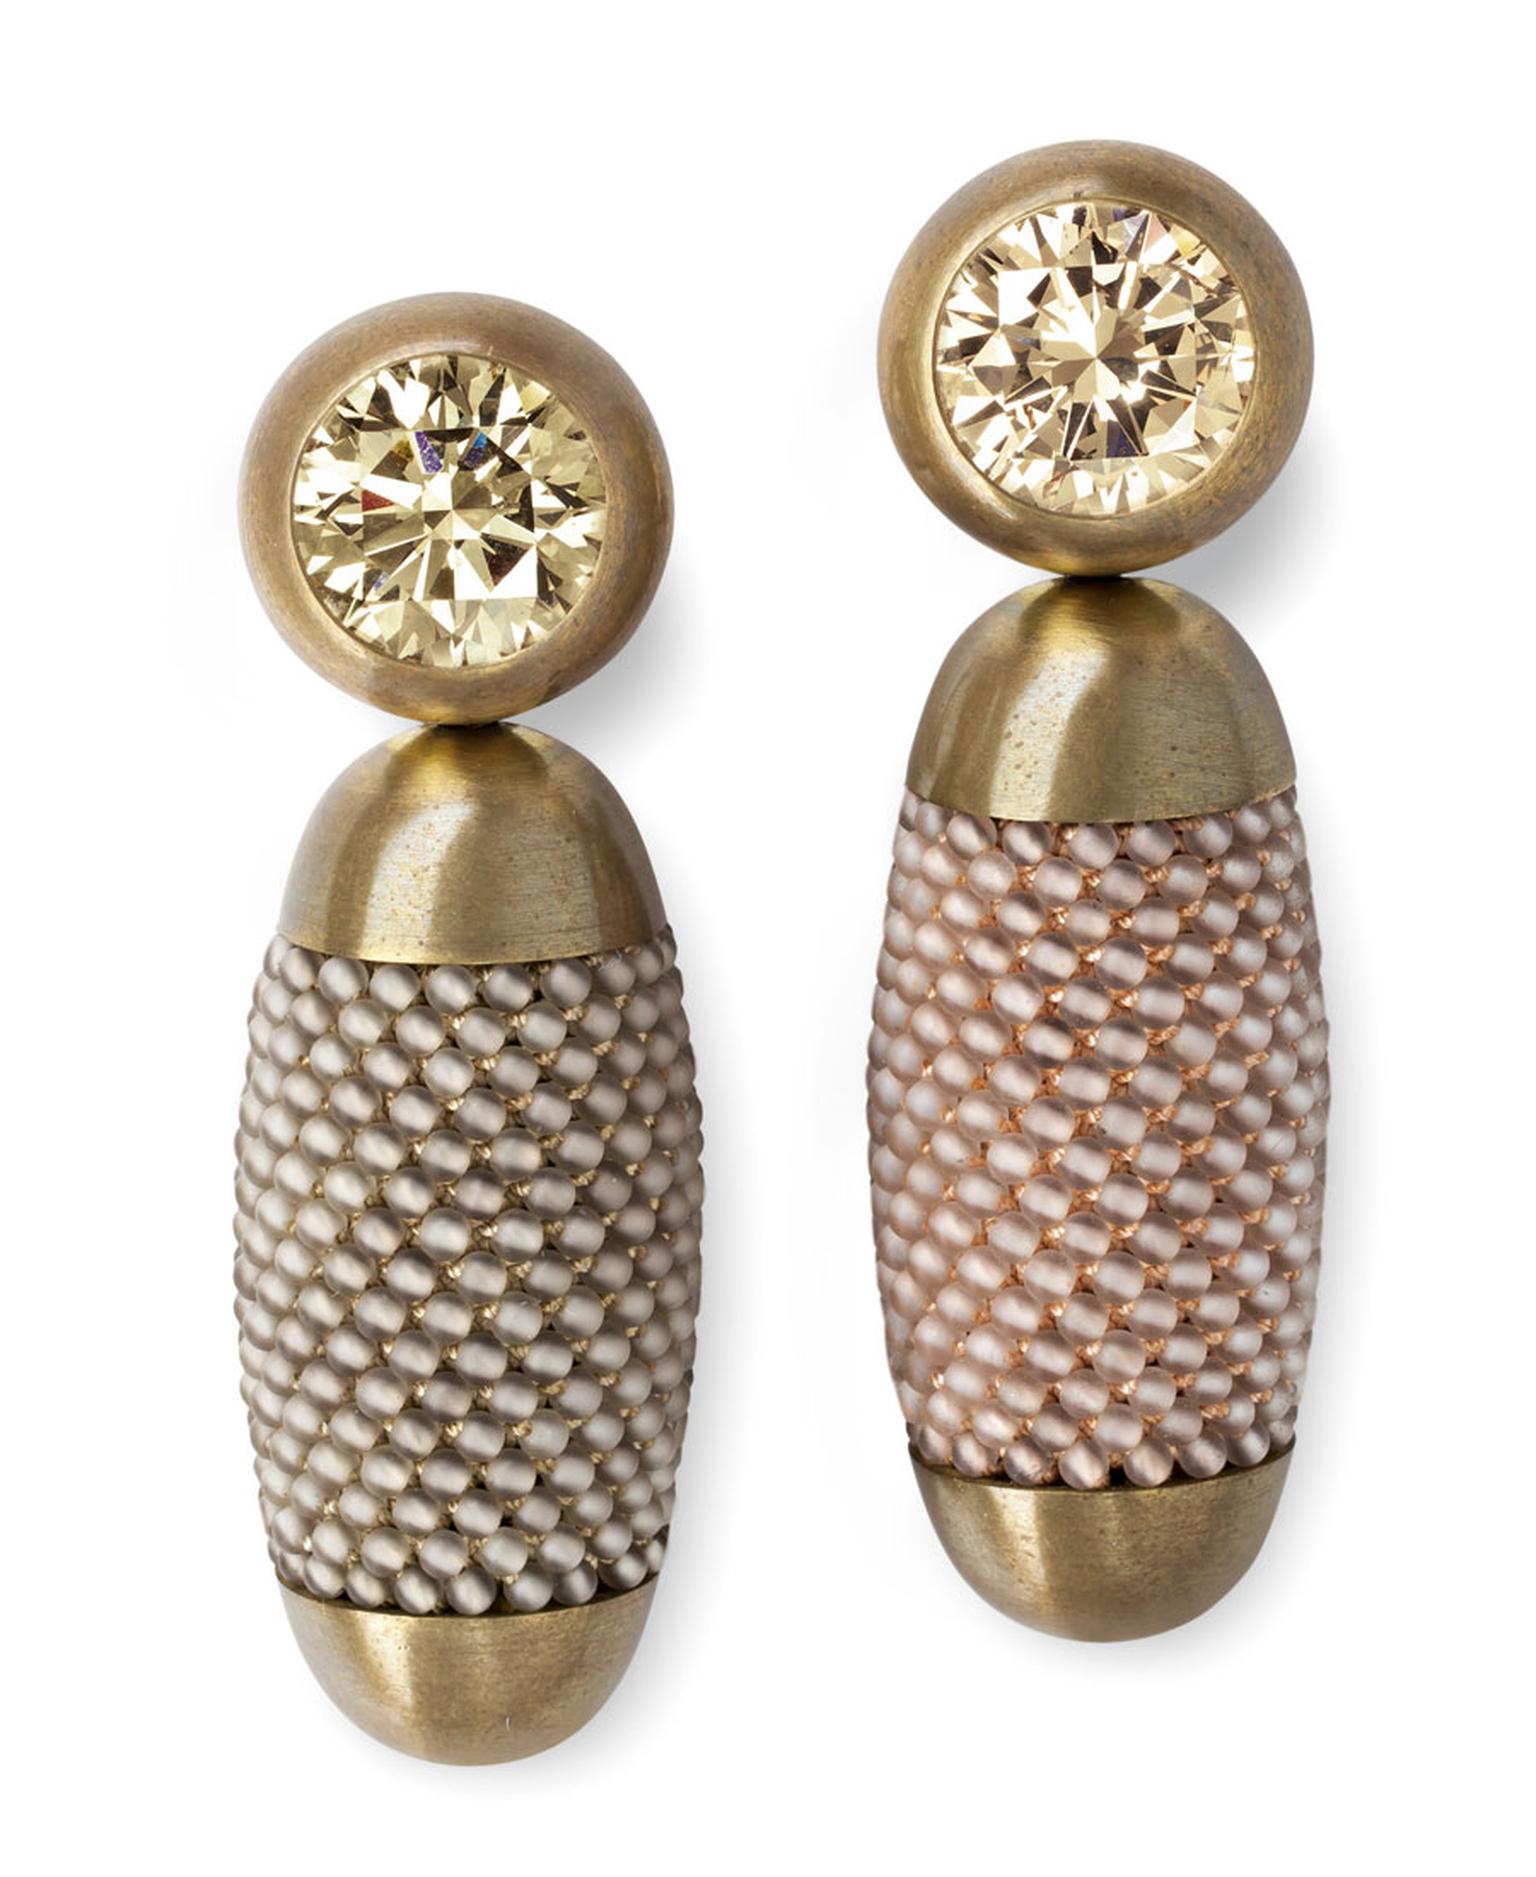 Hemmerle-earrings-brass-white-gold-yellow-brown-diamonds-smoky-quartz-0696.jpg